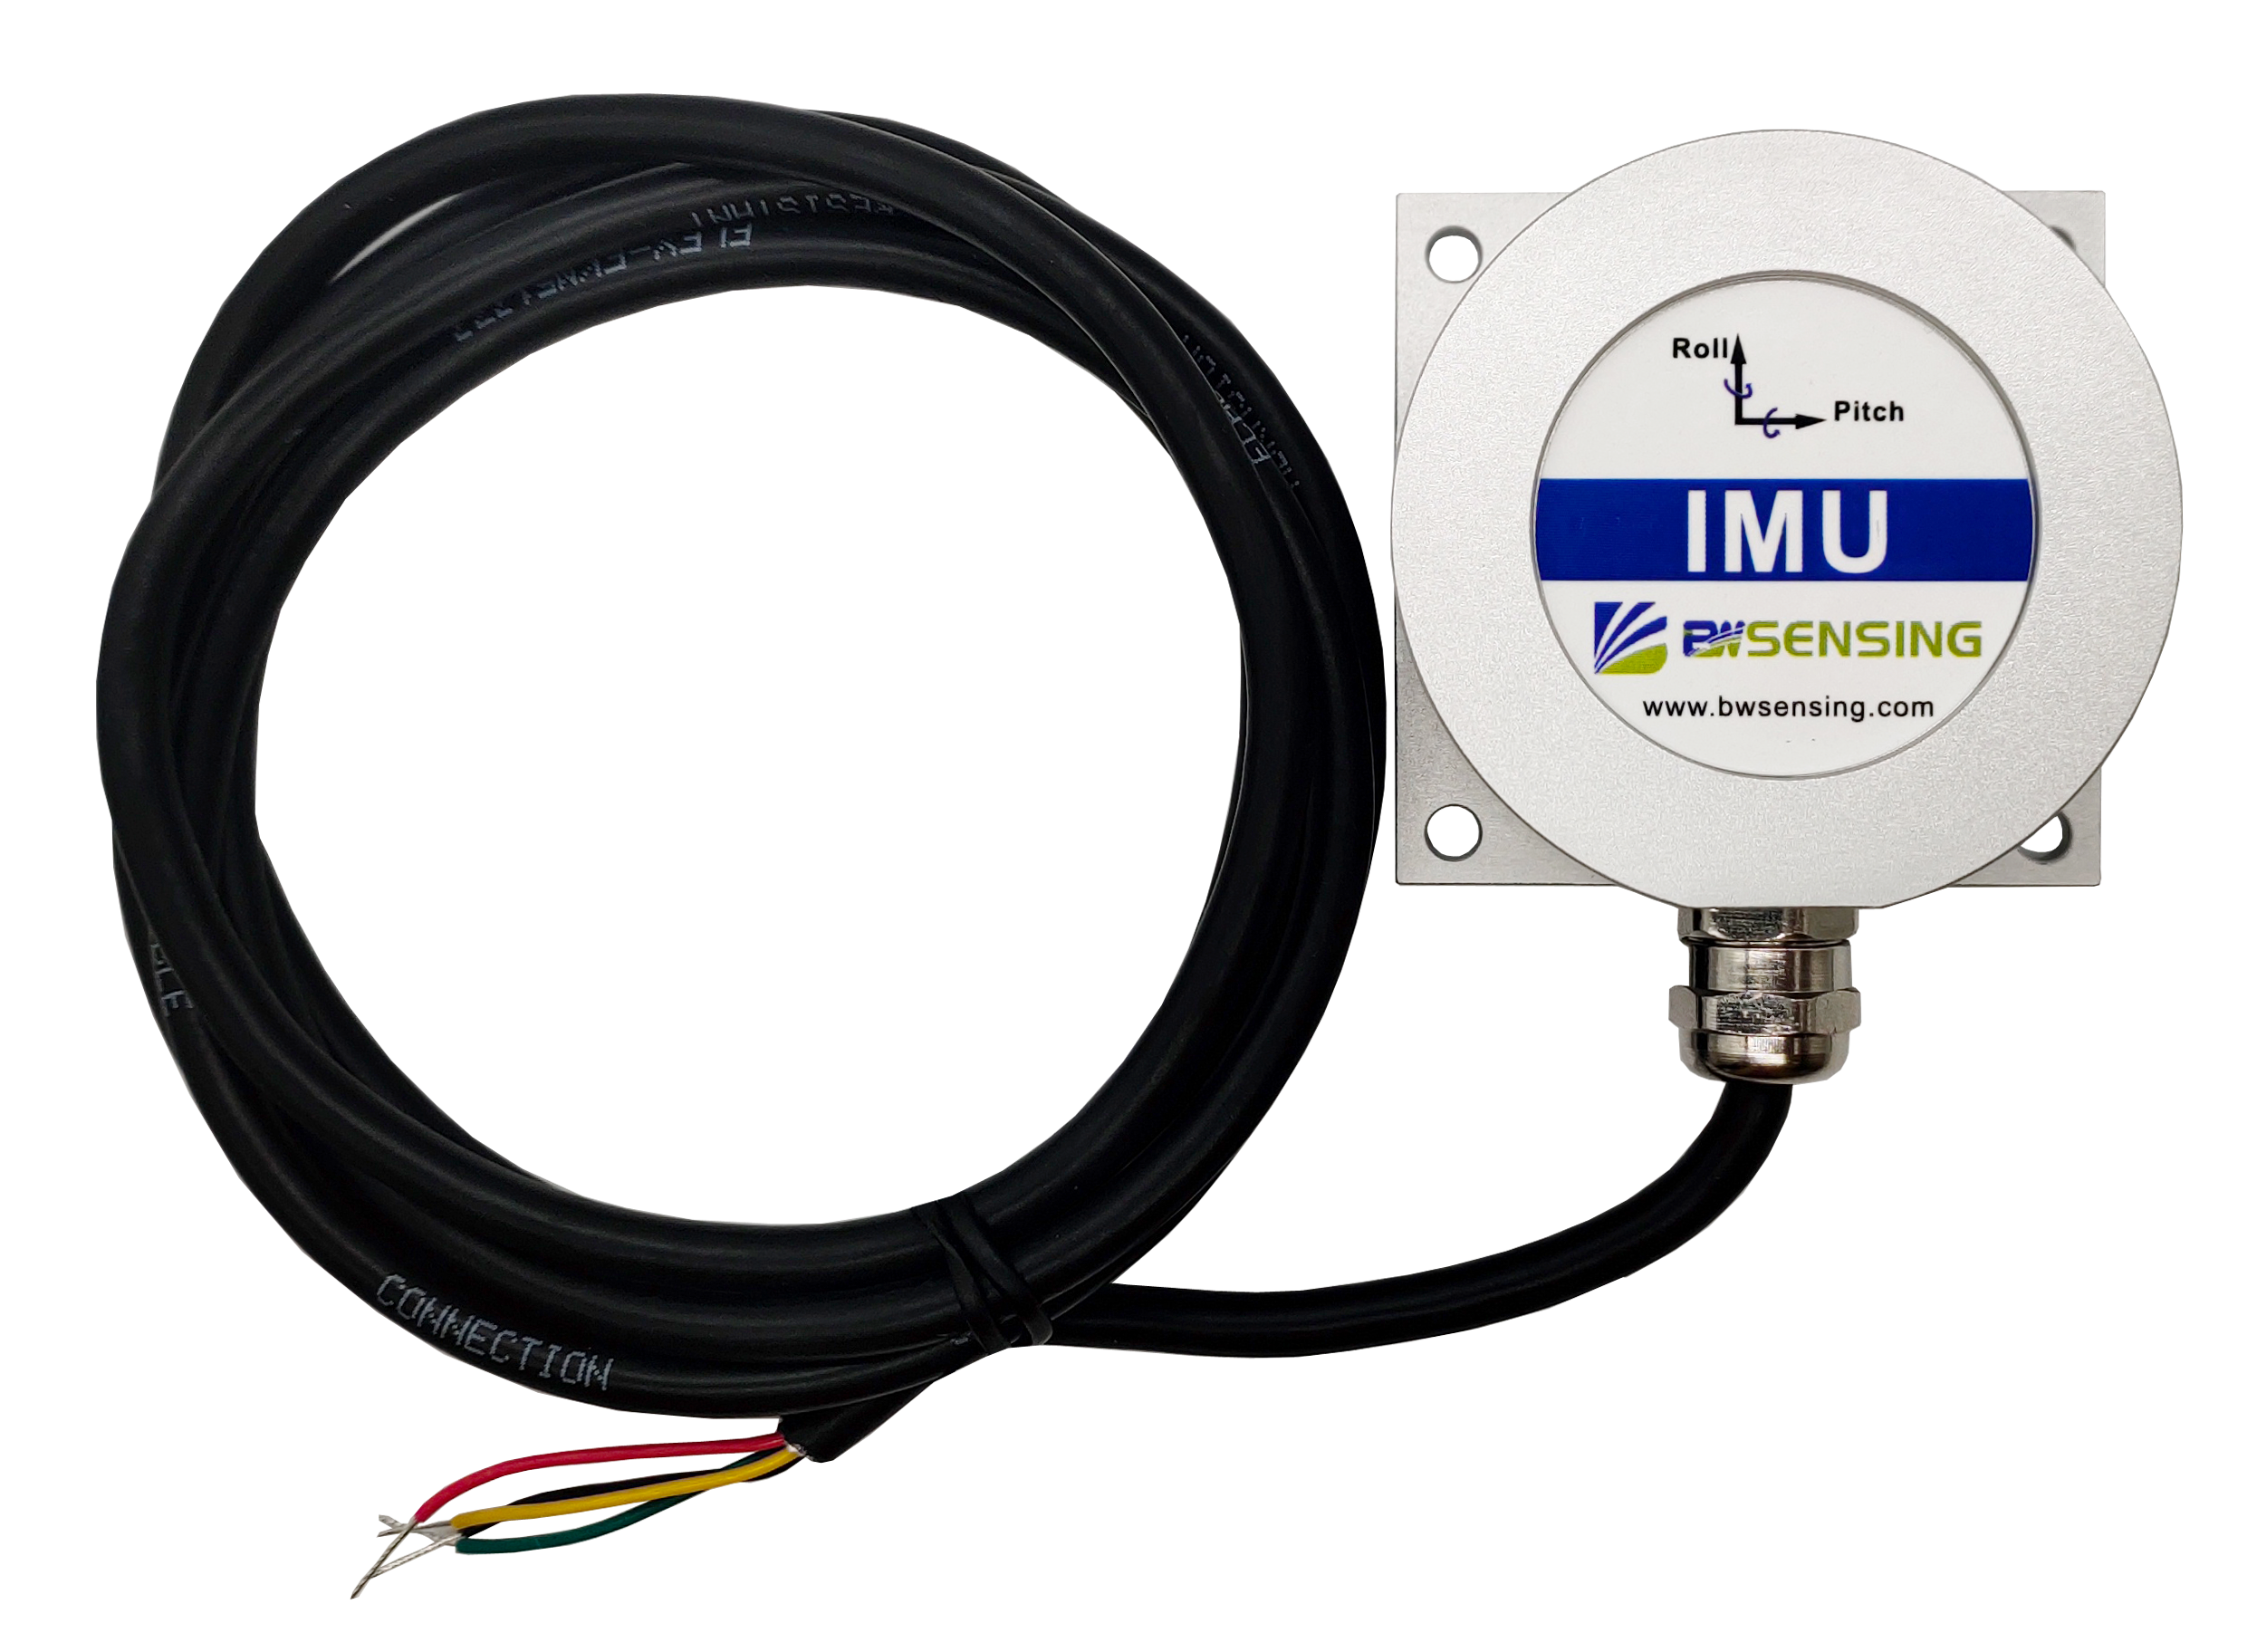 Low-cost Modbus Inertial Measurement Unit IMU127C